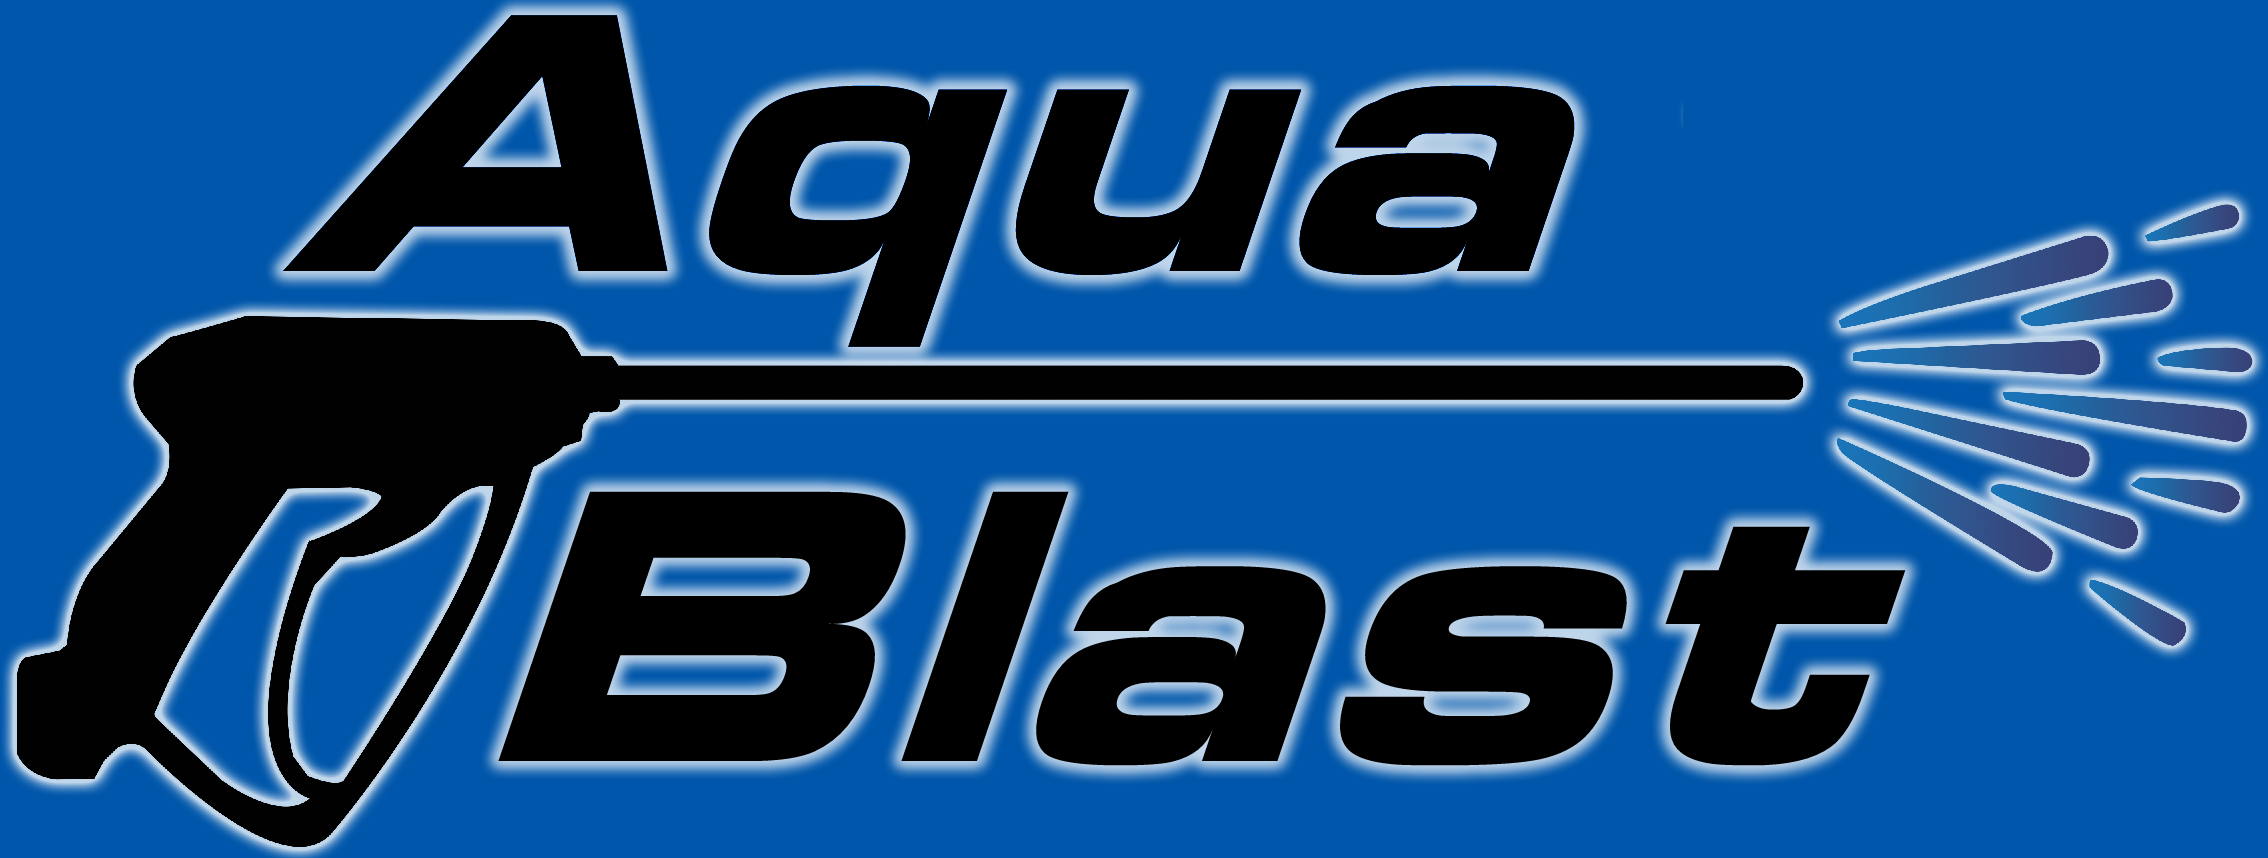 aqua blast logo